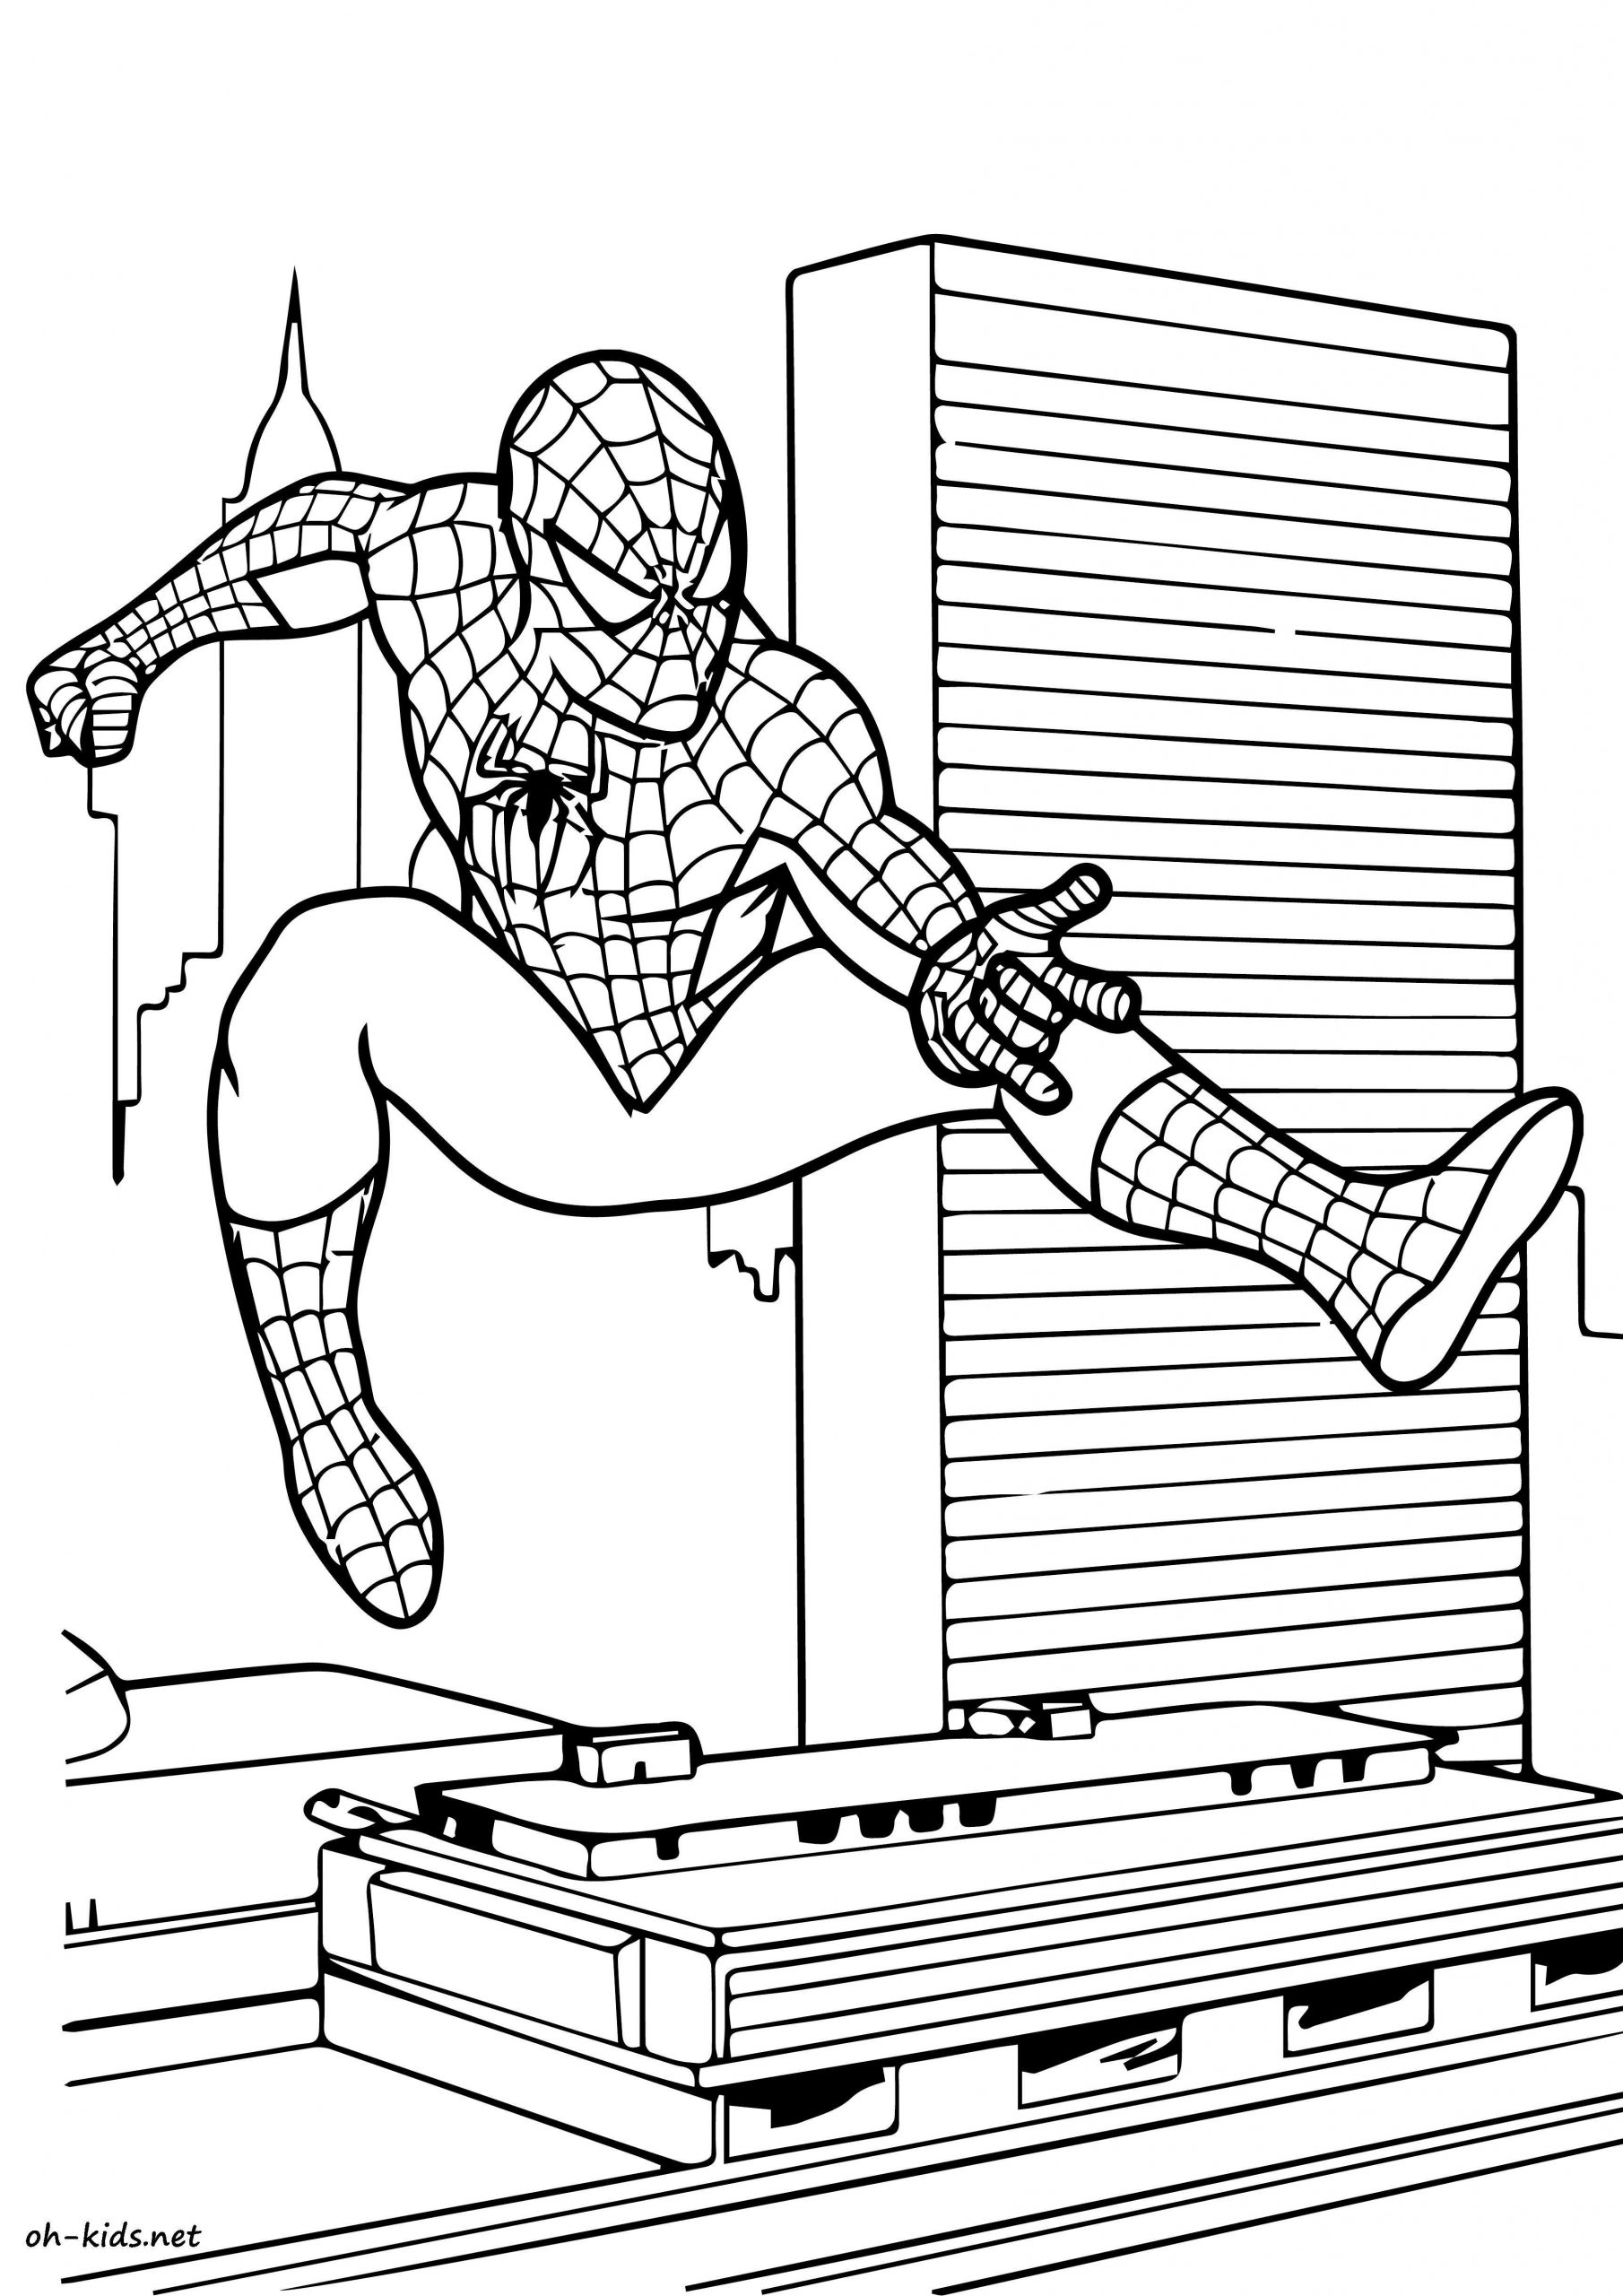 Dessin #834 - Coloriage Spiderman À Imprimer - Oh-Kids tout Spiderman A Colorier 